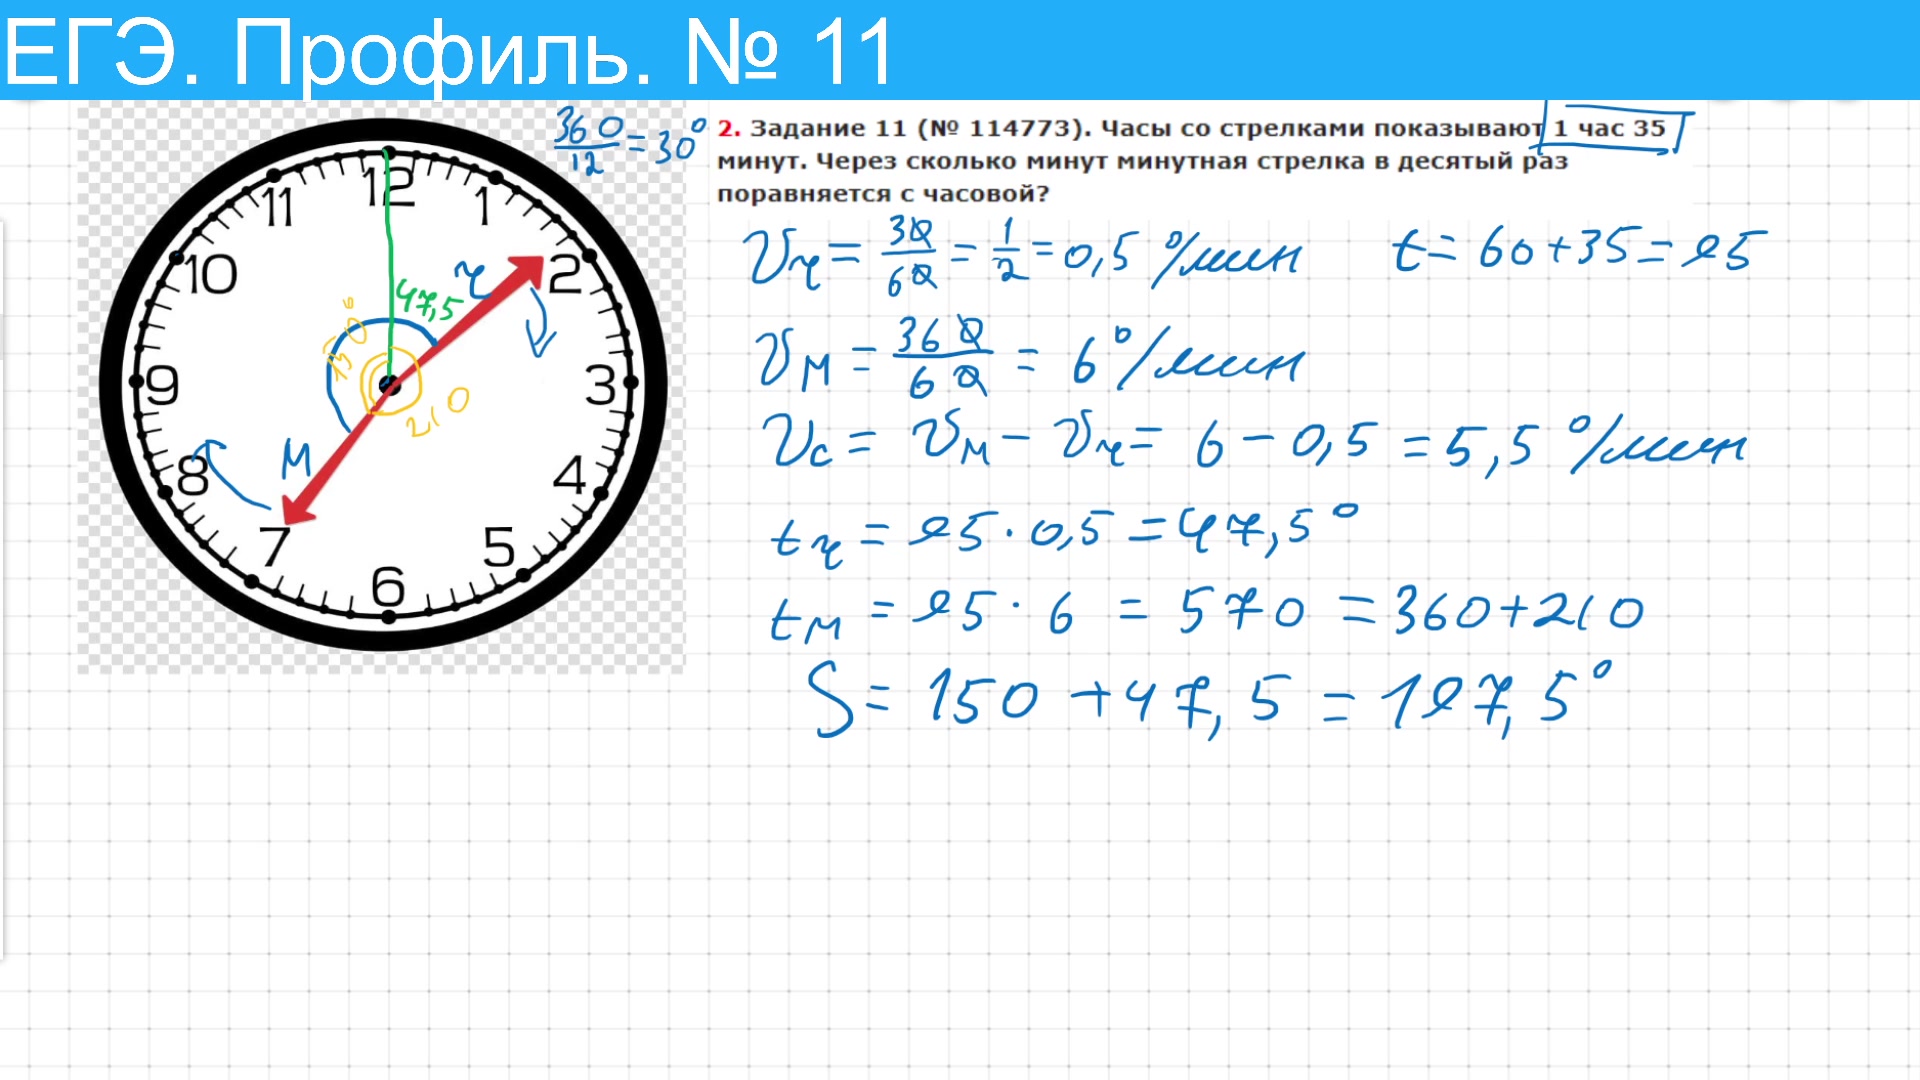 Задачи со стрелками часов. Математические задачи со стрелками часов. Часы со стрелками 1 час 35 минут. Часы с минутной стрелкой.